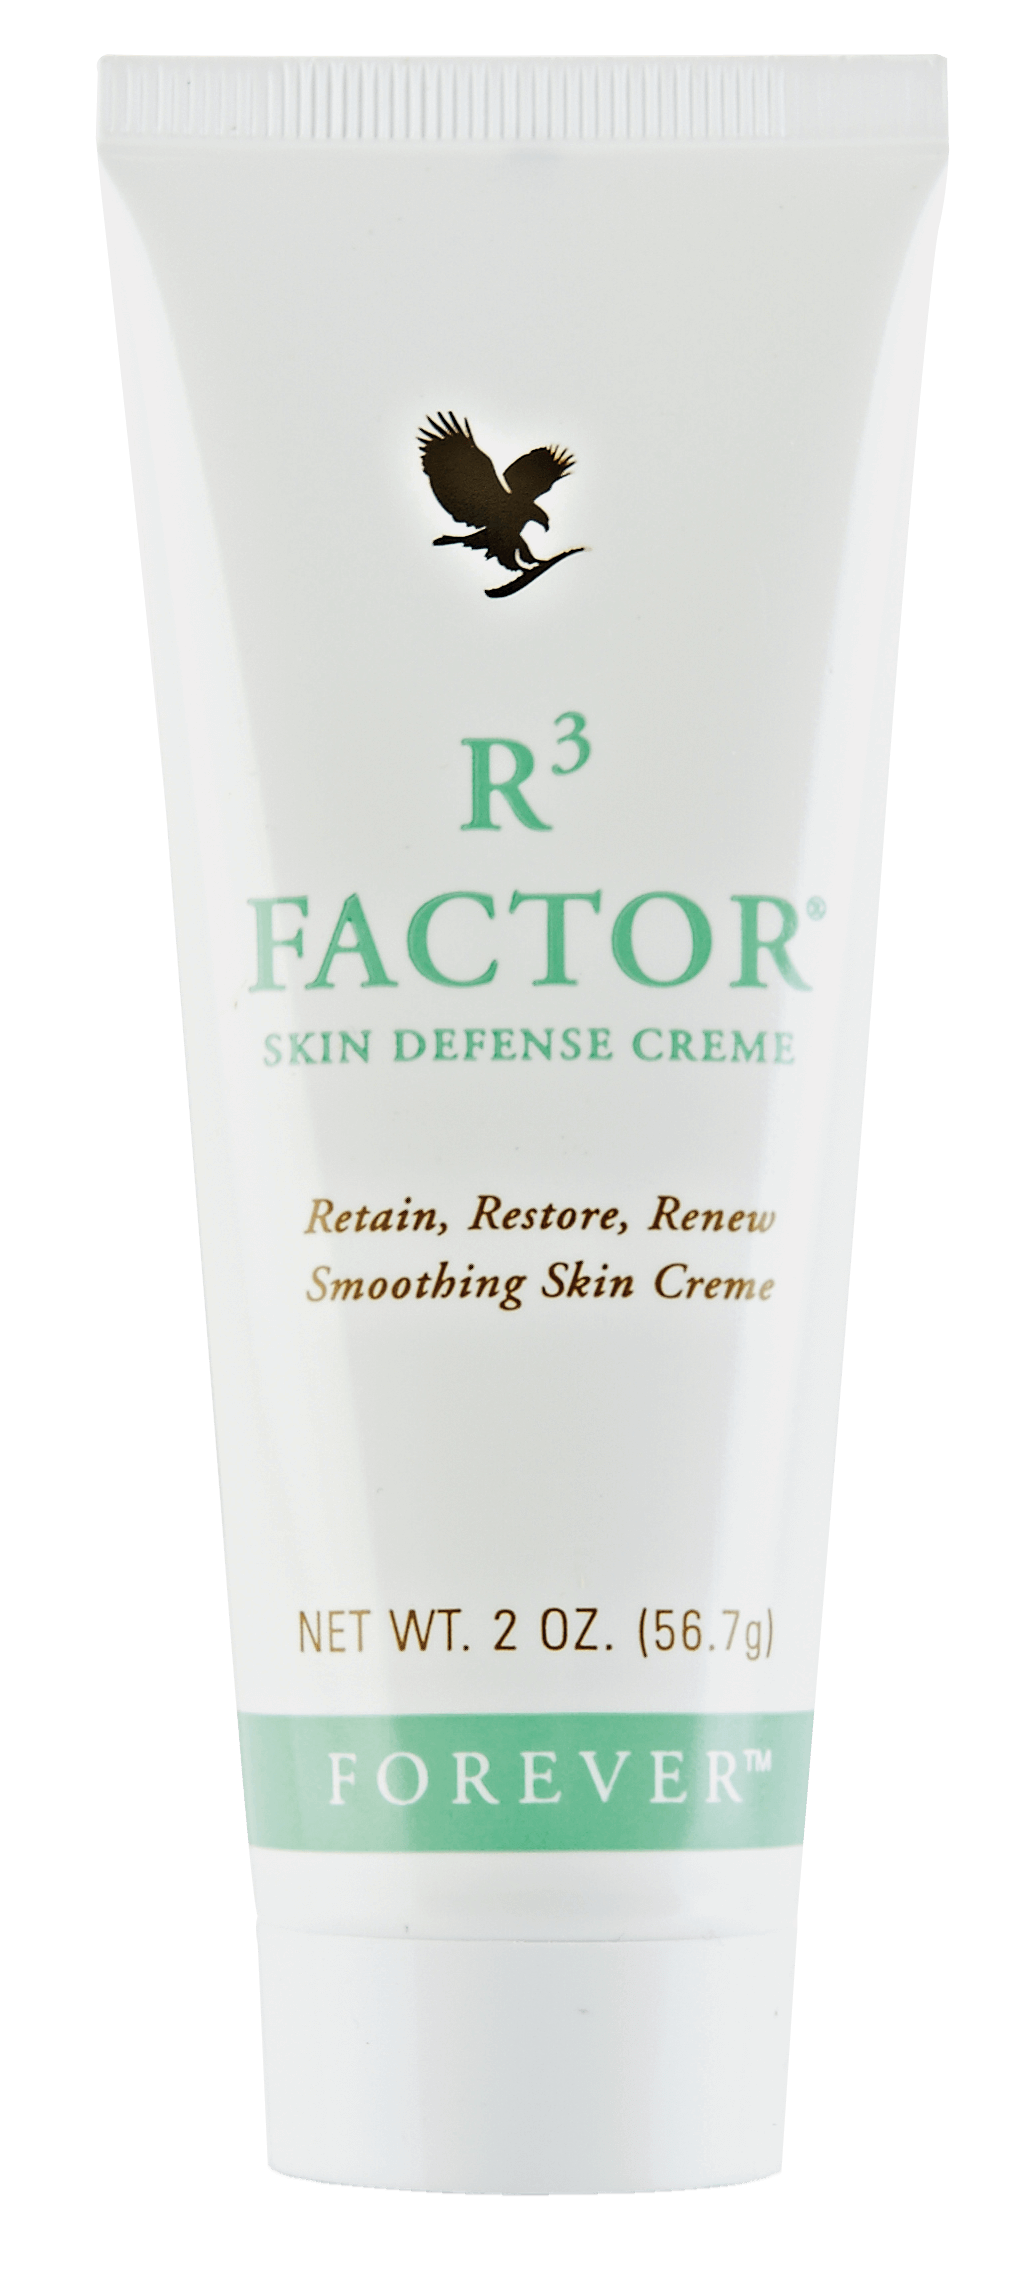 R3 Factor Skin Defence